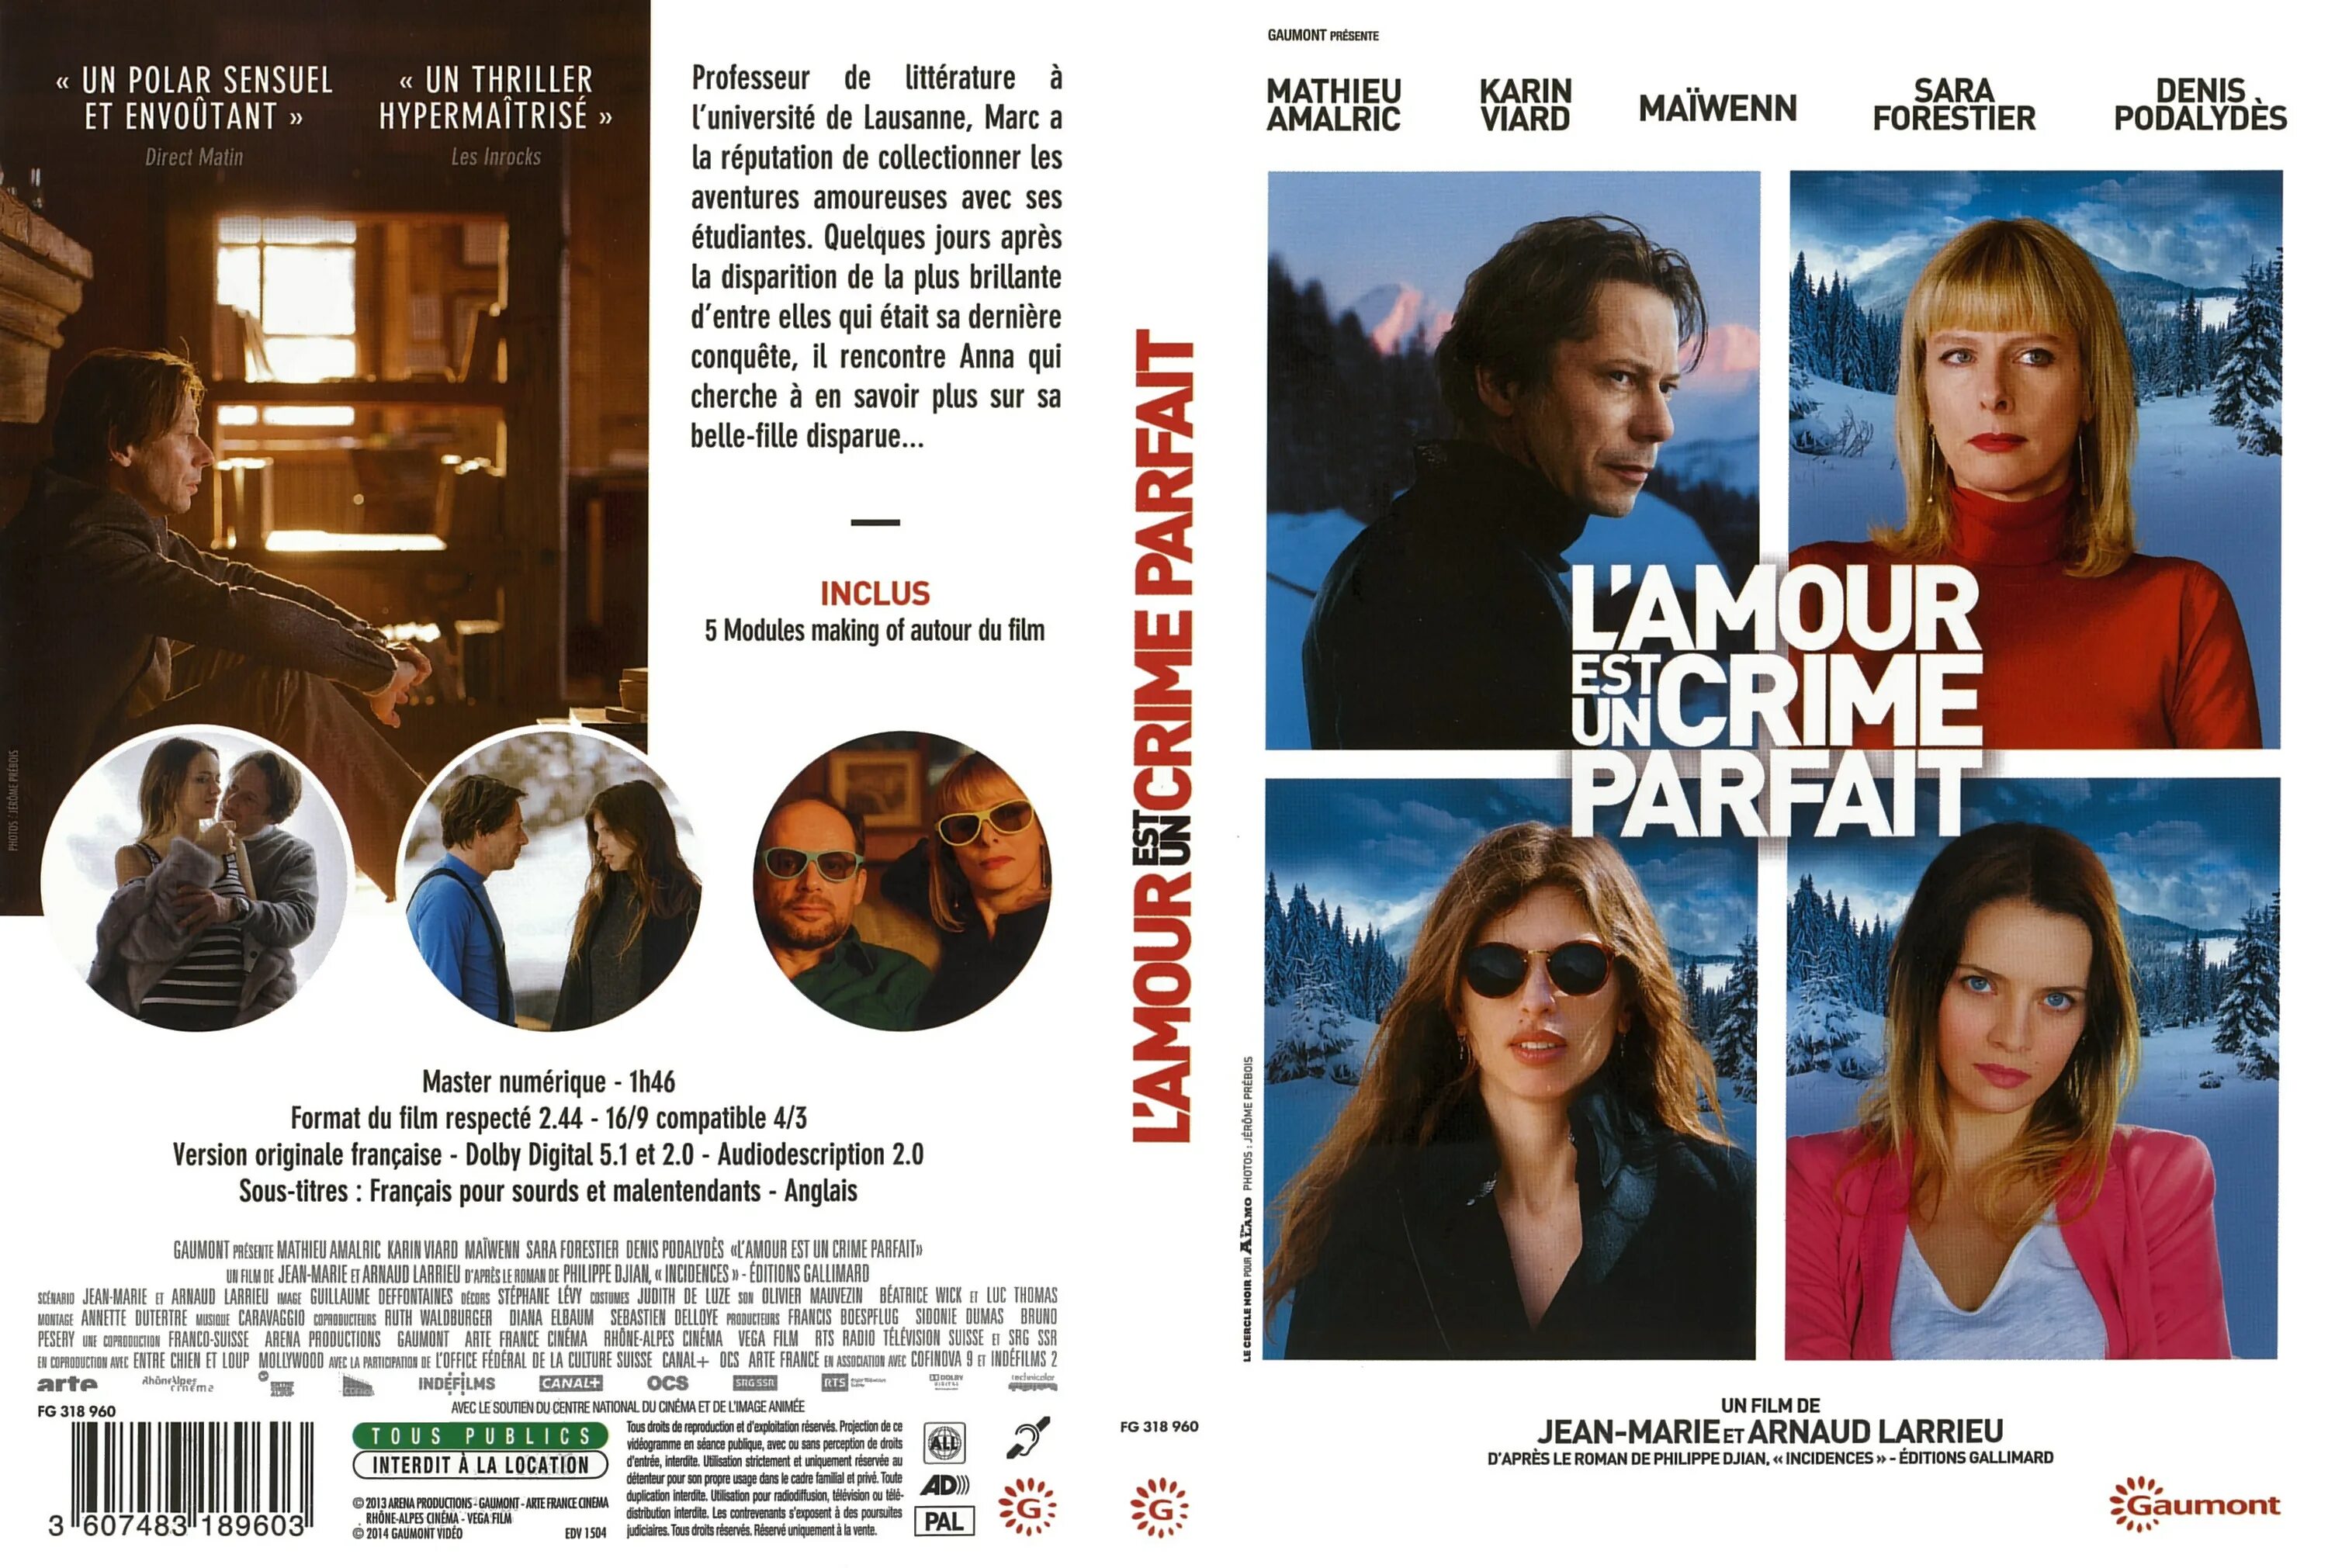 Любовь – это идеальное преступление (2013). L'amour est un Crime parfait (2013) DVD Cover. L amour est un